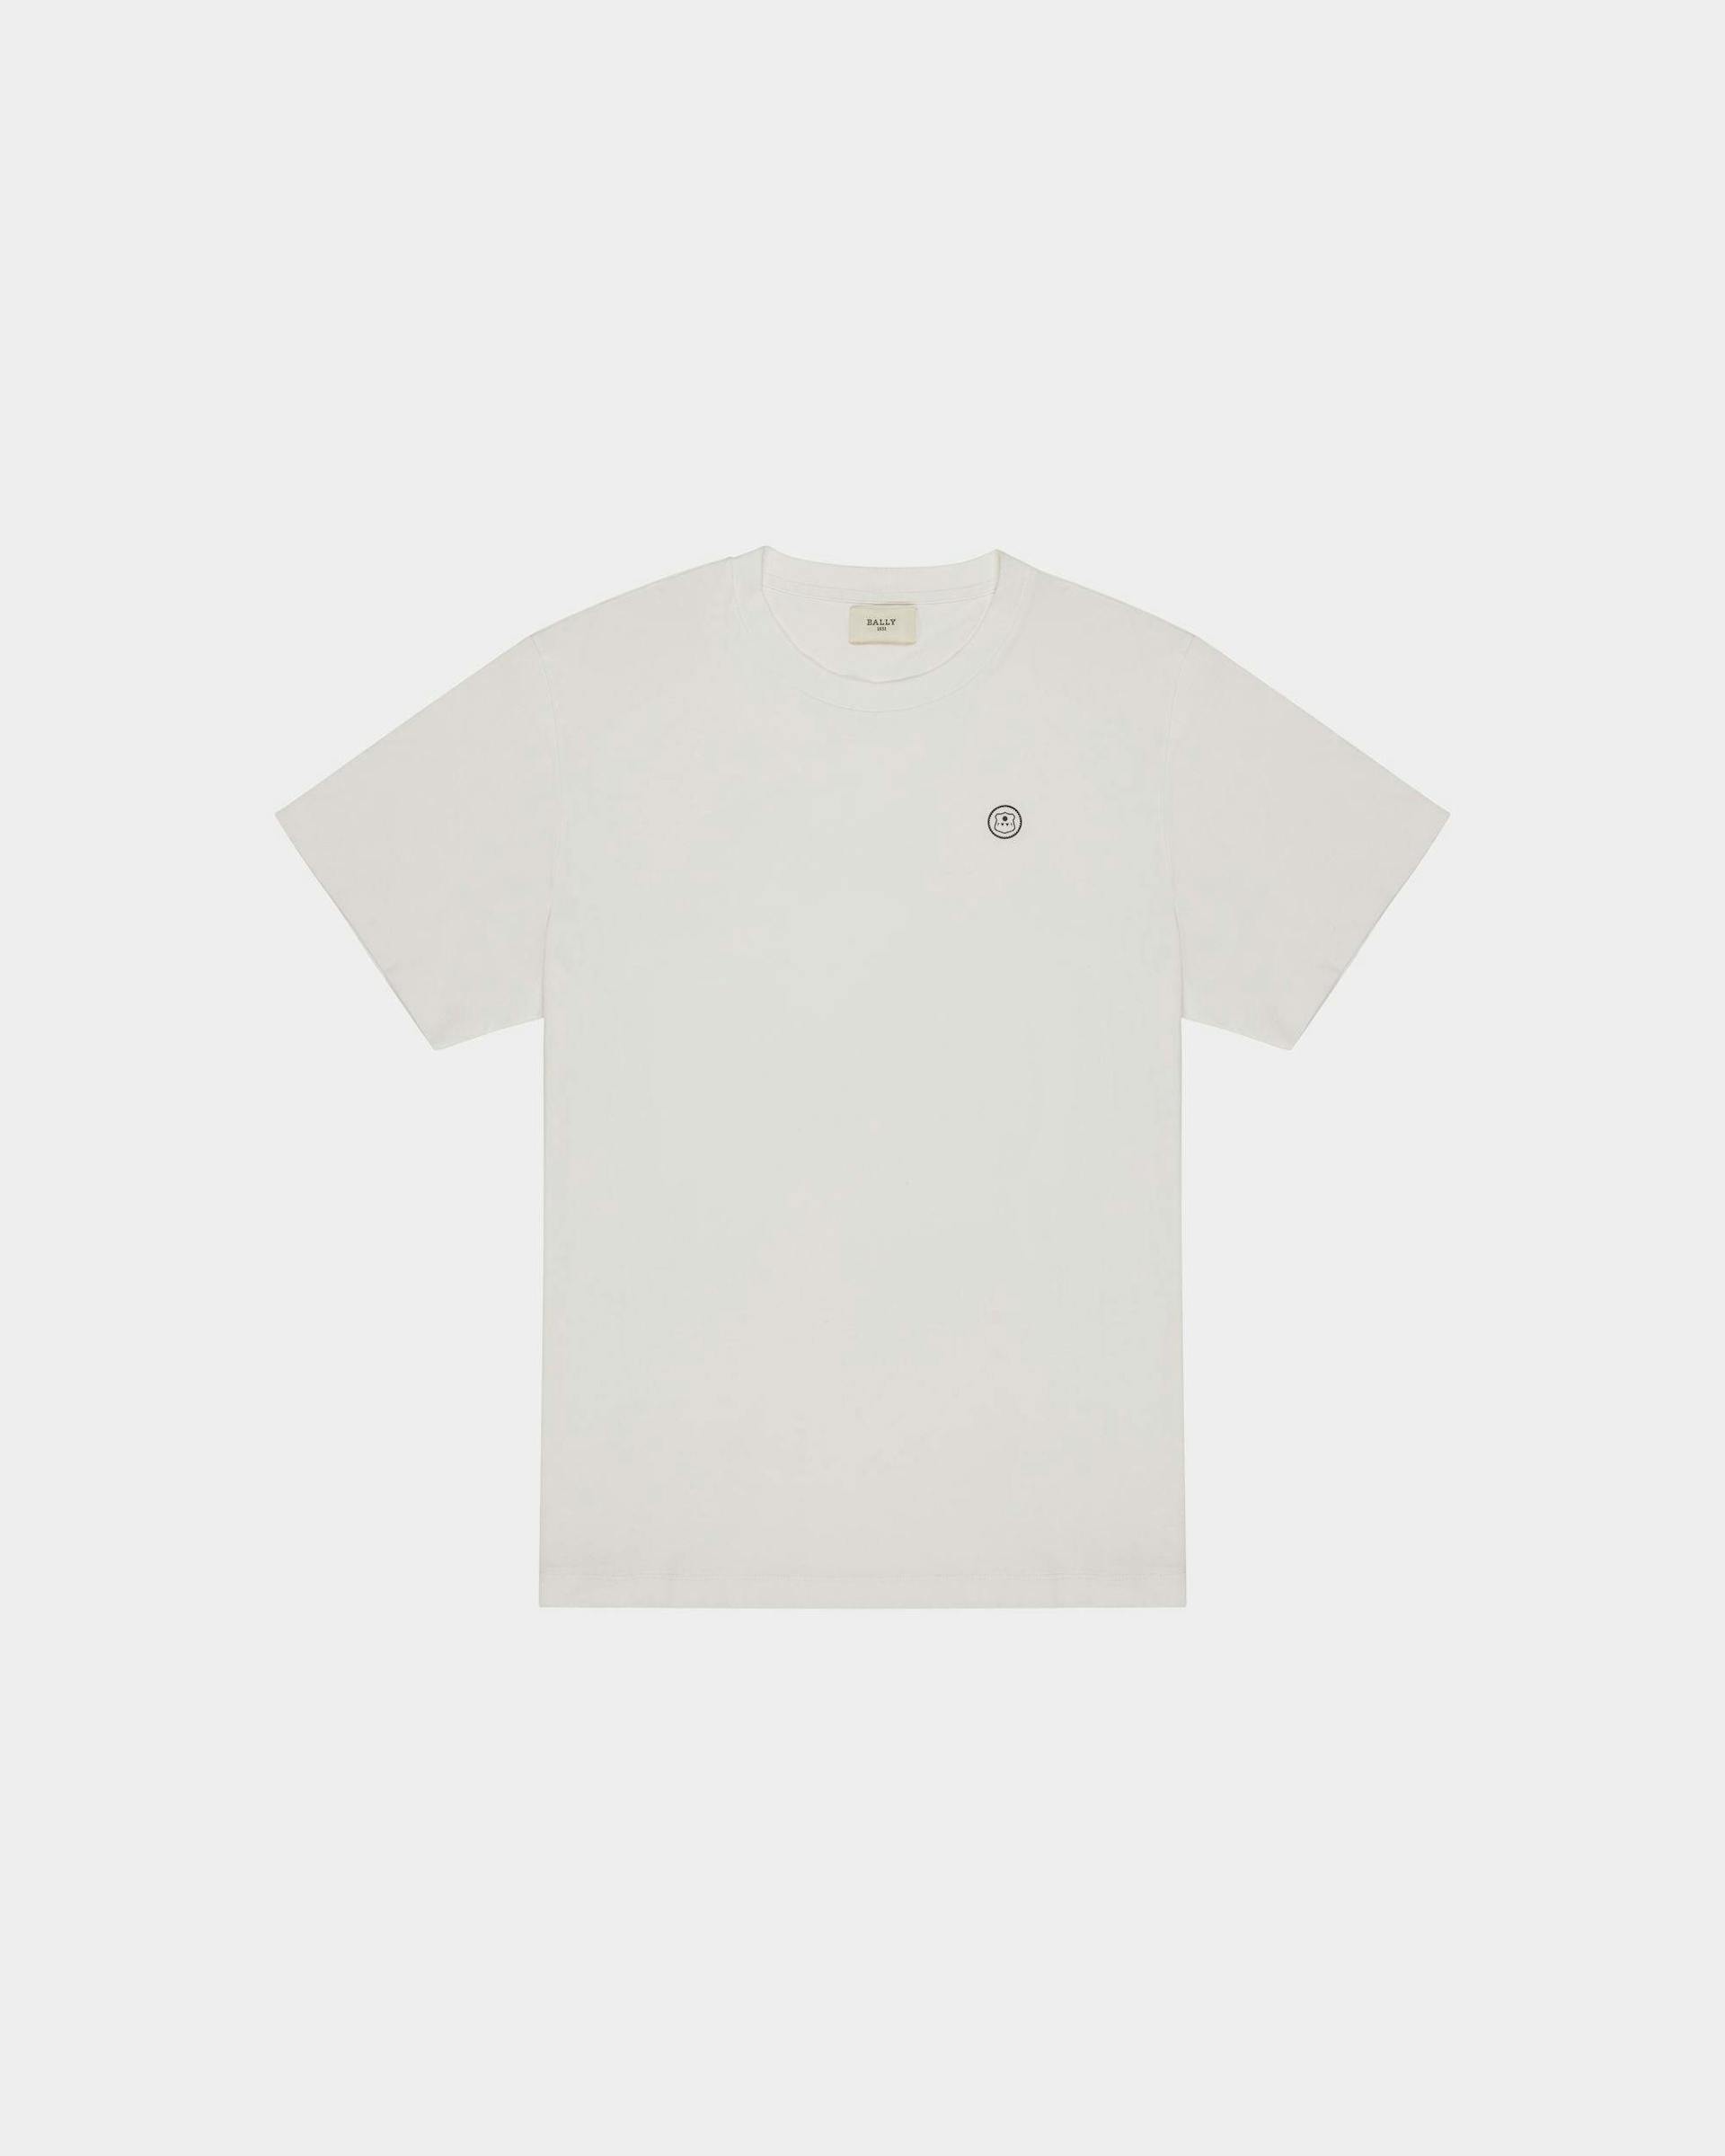 Bally ロゴスタンプ Tシャツ ホワイト コットン Tシャツ - Bally - 01